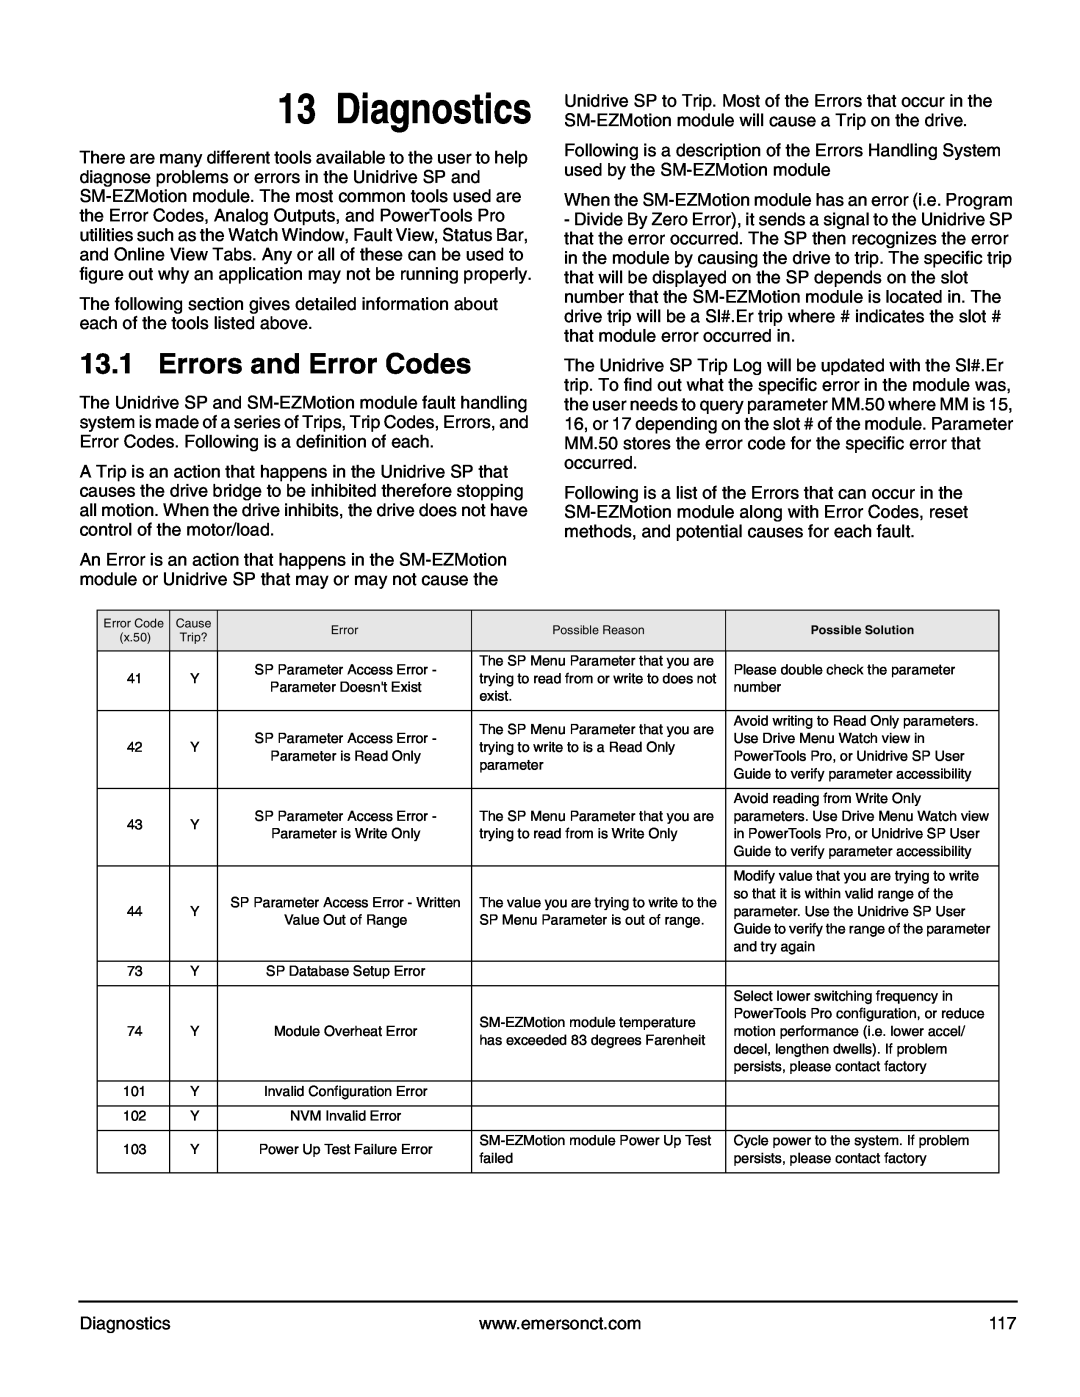 Emerson P/N 400361-00 manual Diagnostics, Errors and Error Codes 